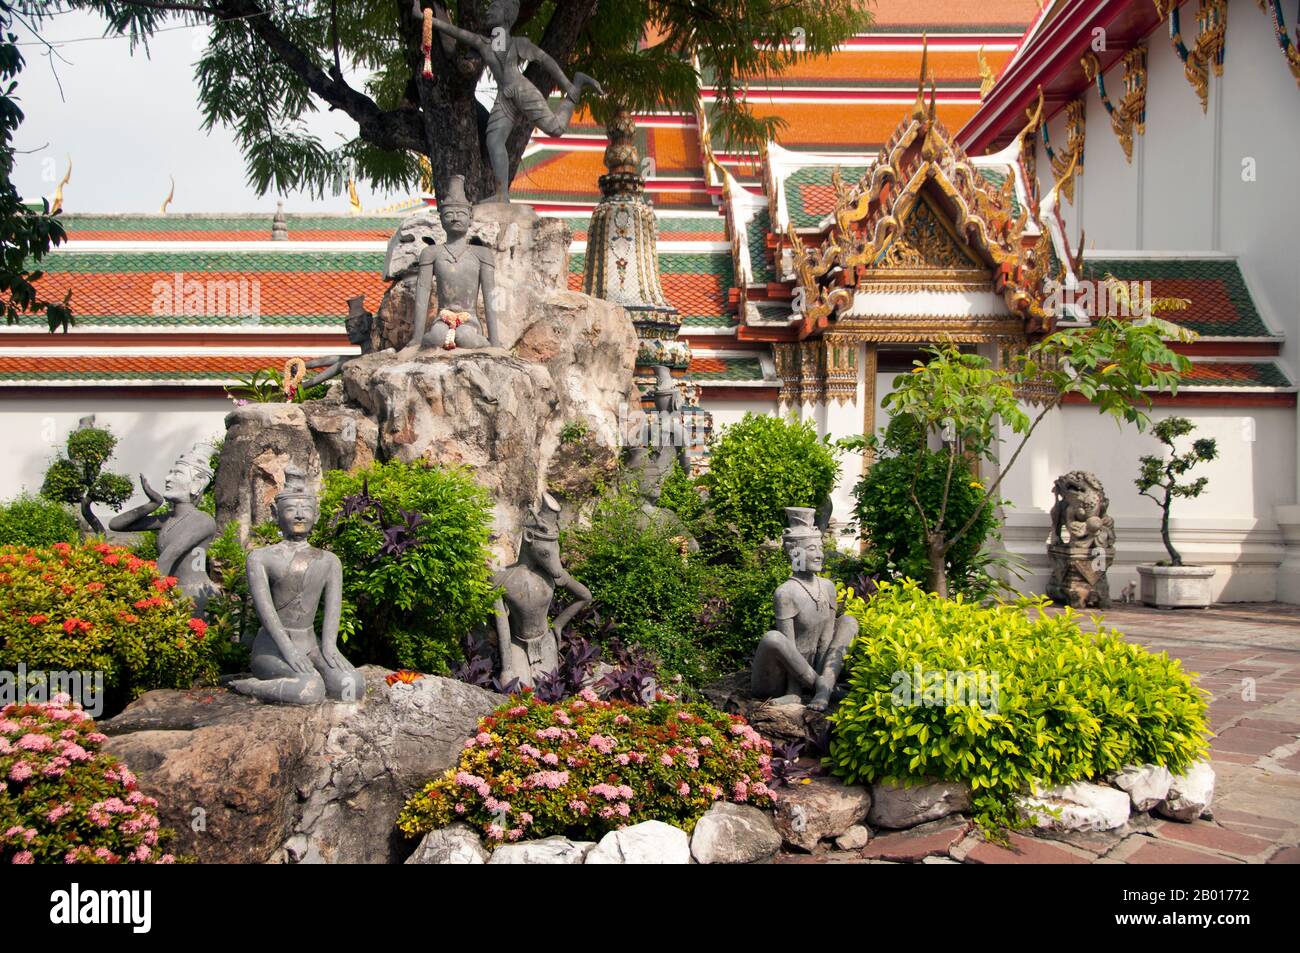 Thaïlande: Chiffres ermite, Wat Pho, Bangkok.Construit au 16th siècle, Wat Pho est le plus ancien temple de Bangkok.Le roi Rama I de la dynastie Chakri (1736—1809) reconstruit le temple en 1780s.Officiellement appelé Wat Phra Chetuphon, c'est l'un des temples bouddhistes les plus connus de Bangkok et est aujourd'hui une attraction touristique majeure, situé directement au sud du Grand Palais.Wat Pho est célèbre pour son Bouddha couché et renommé comme la maison du massage thaïlandais traditionnel. Banque D'Images